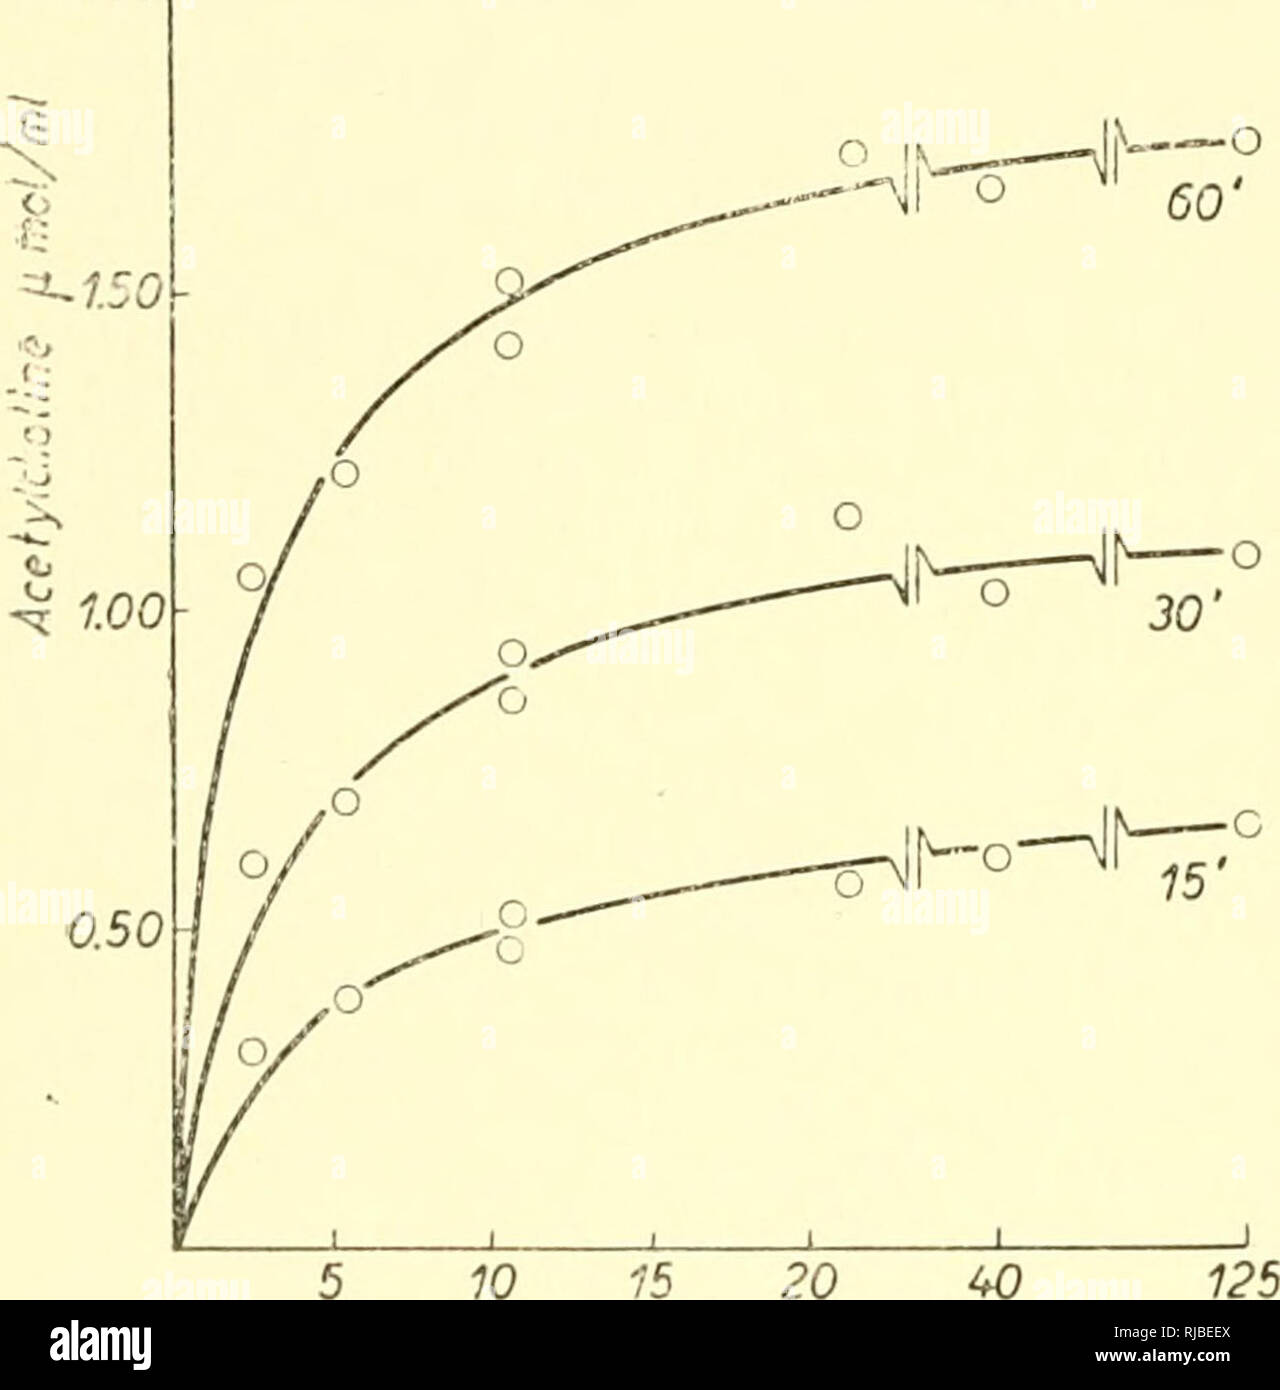 . Zelle Chemie; eine Sammlung von Papieren zu Otto Warburg anlässlich seines 70. Geburtstag gewidmet. Warburg, Otto Heinrich, 1883 -; Biochemie. 3 Ist R. BERMAN, I. B. WILSON, D. NACHMANSOHN VOL. 12 (1953) Probe auf das glutathion Extinktionskoeffizient und die biologische Acetylcholin Messung; Zeit (min) fiM von Acetylcholin gebildet jml Bioassay Nitroprussid Test 30 60 0-33 0,670-34 0,65 diese Daten das Aussehen von mercaptan als Maß für die Acetylierung validieren. Es muss jedoch beachtet werden, dass es einen Unterschied gibt - noch nicht erklärt - zwischen den beiden Systemen: In der vollen sys Stockfoto